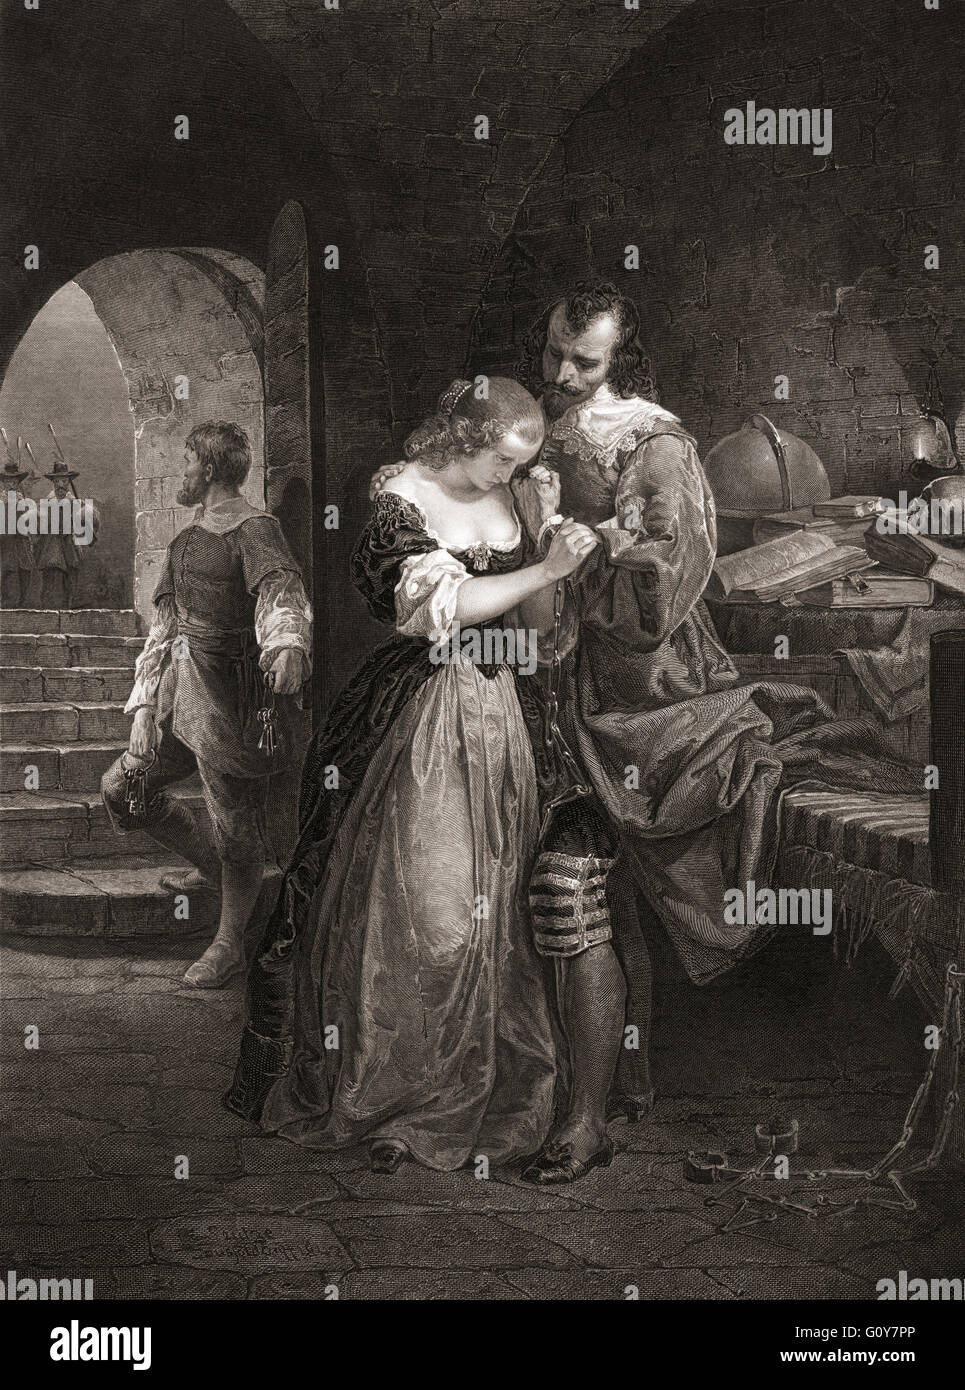 Sir Walter Raleigh la séparation avec sa femme. Gravure du xixe siècle d'après une peinture par Emanuel Gottlieb Leutze (1816-1868). Sir Walter Raleigh, 1554-1618. L'illustration montre lui peu avant son exécution rend hommage à son épouse Elizabeth (née Throckmorton, 1565-1647). Banque D'Images